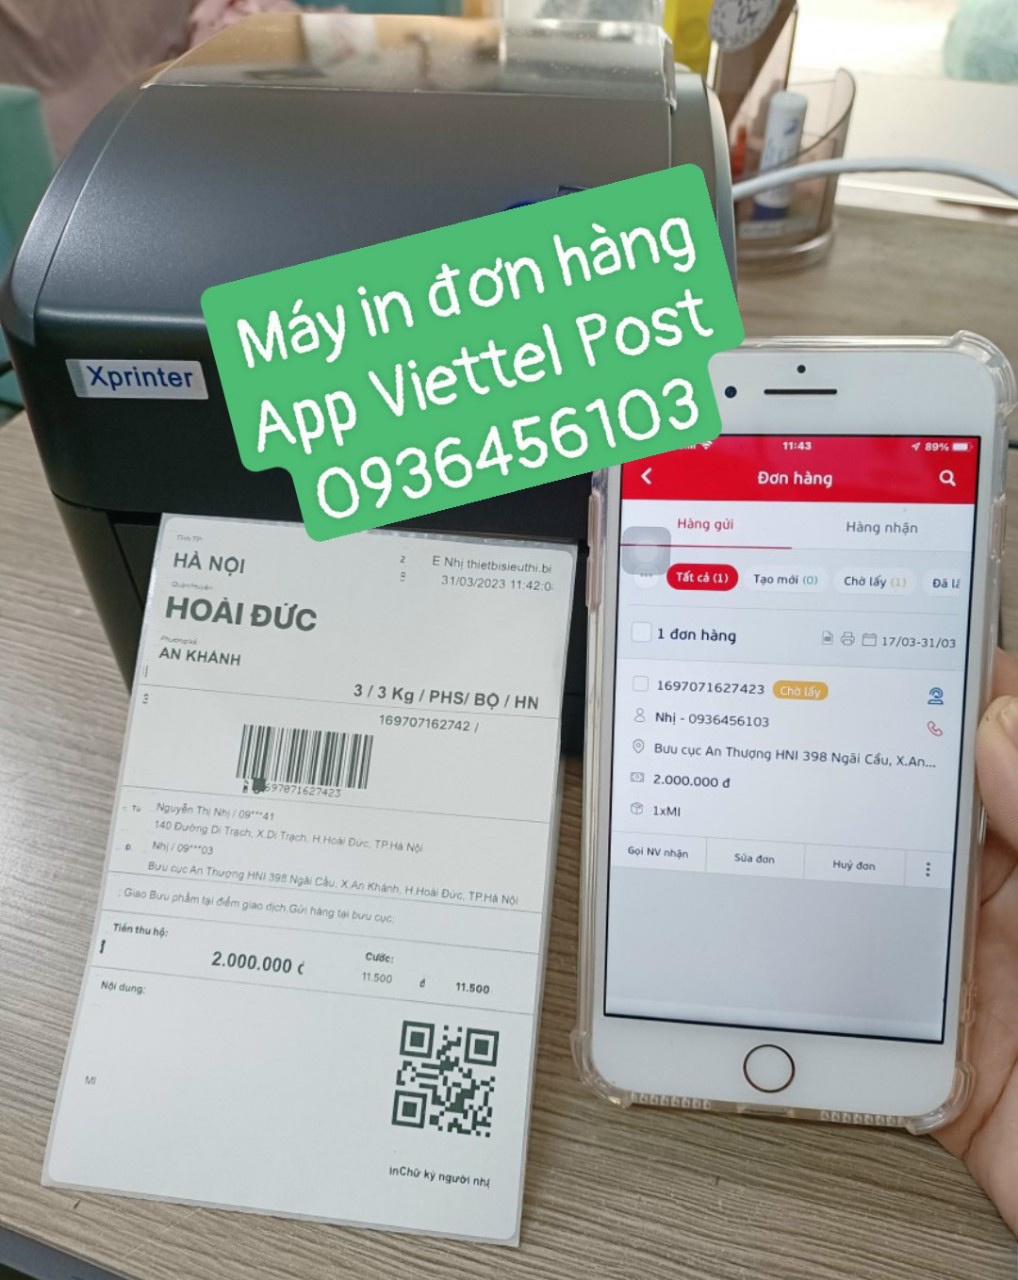 Máy in mã vận đơn Viettel Post qua điện thoại